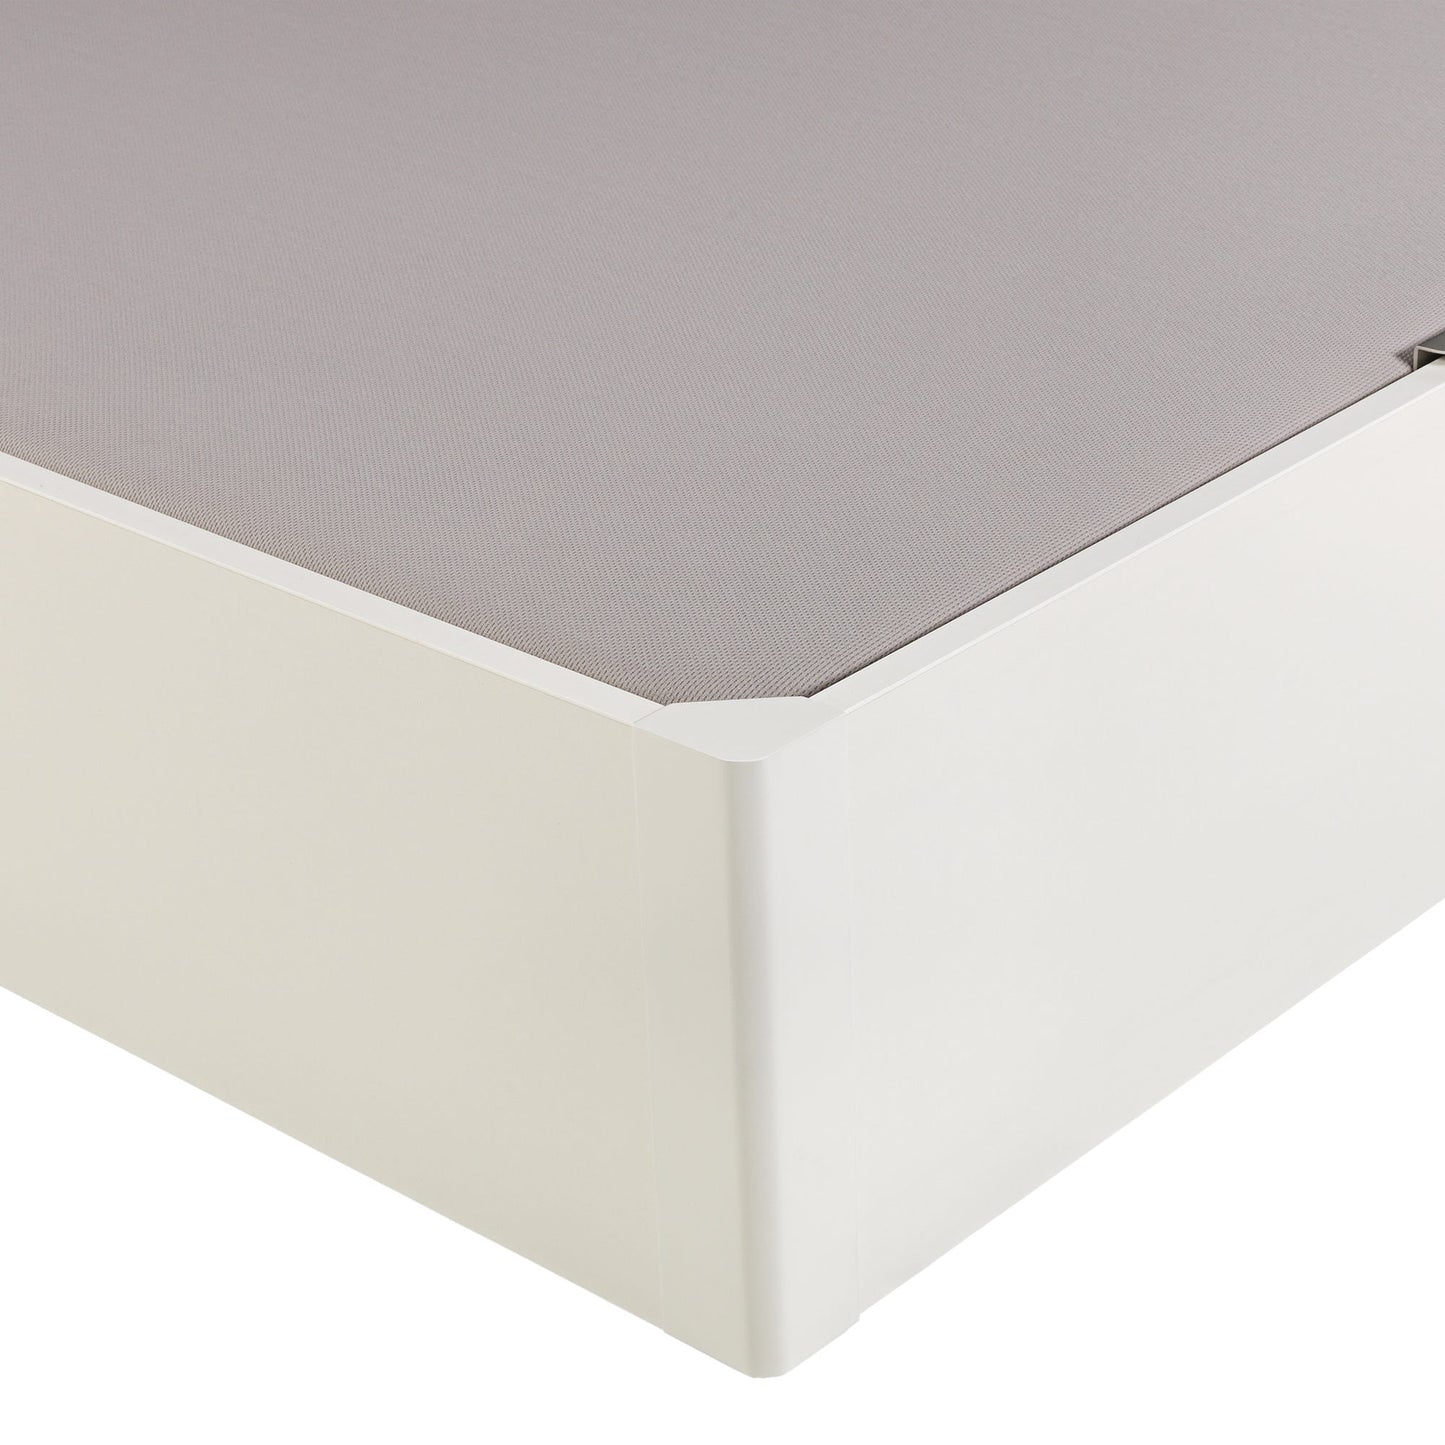 Canapé abatible de madera eléctrico de alta capacidad tapa única de color blanco - DESIGN - 120x182